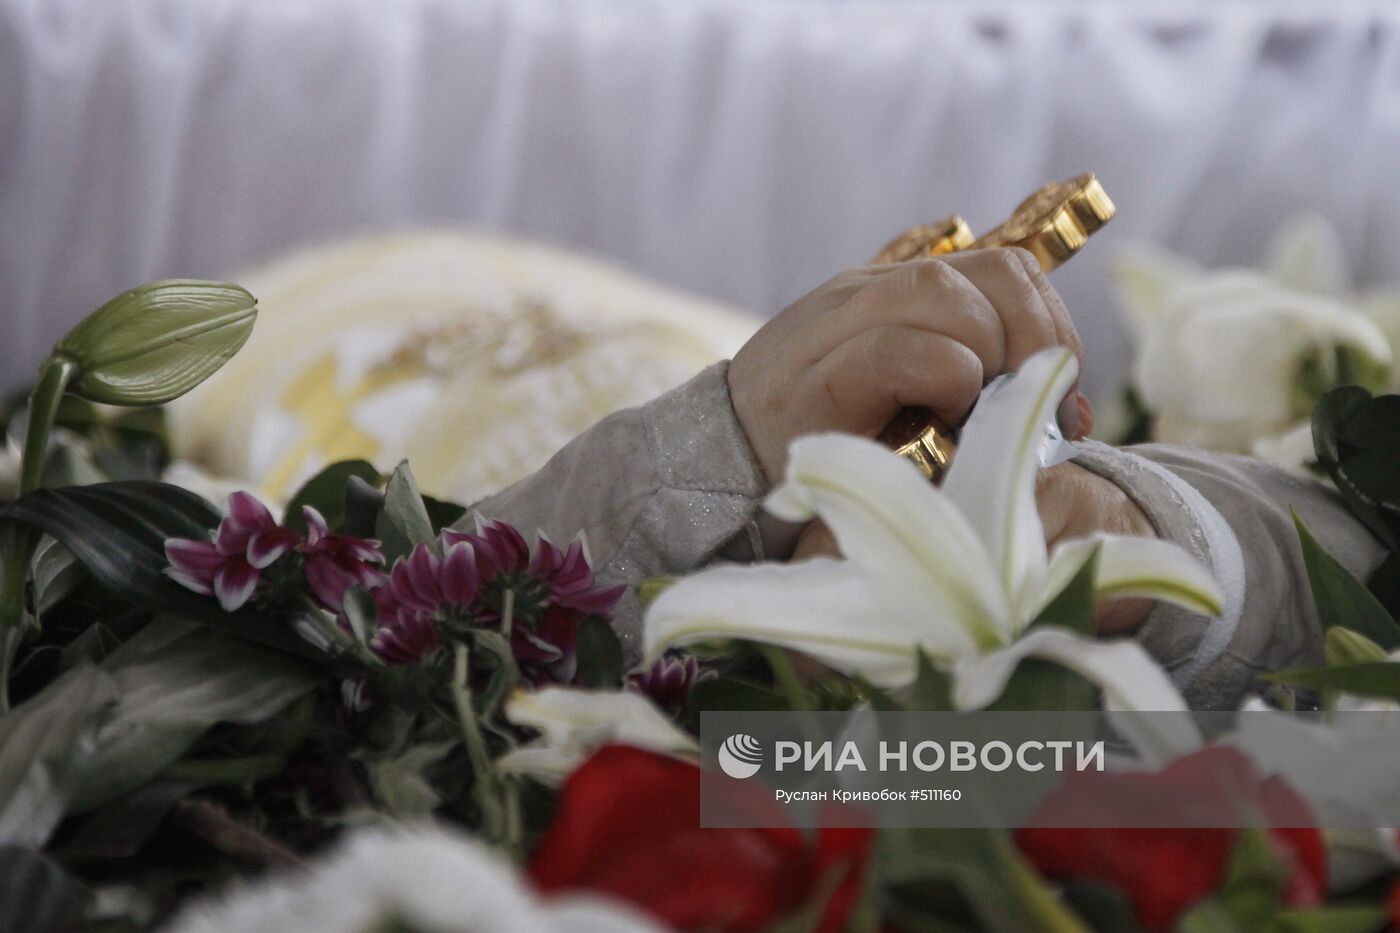 Похороны священника Даниила Сысоева на Кунцевском кладбище